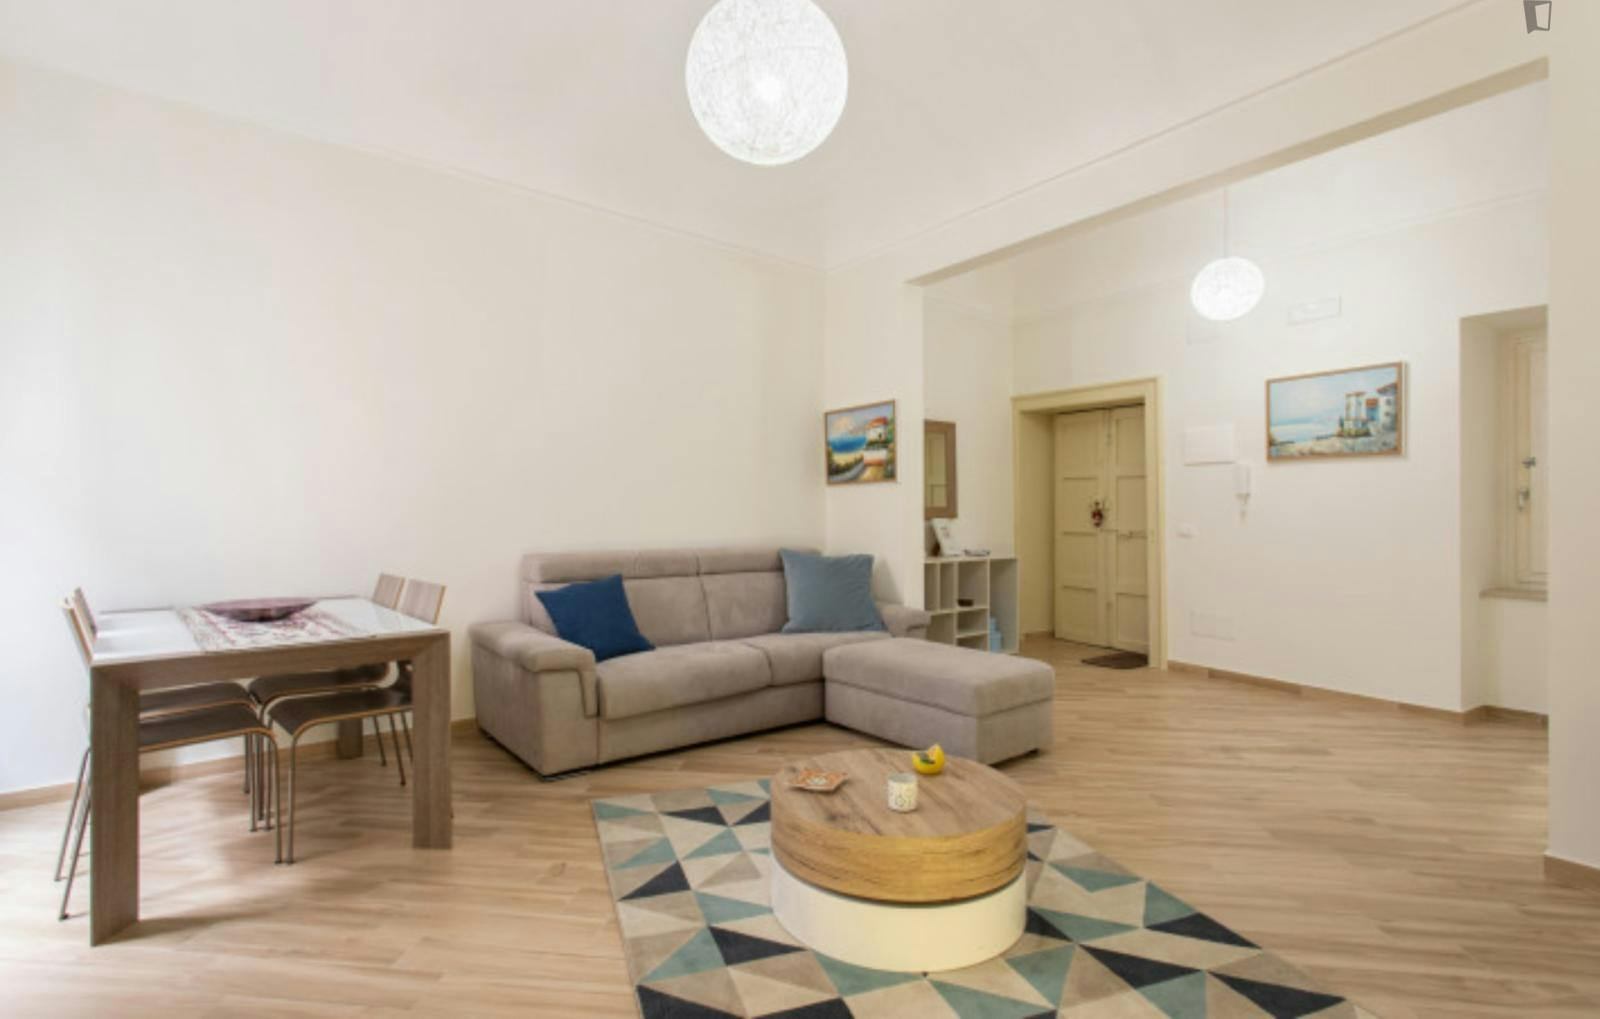 Appealing 1-bedroom flat near Fontana di Diana